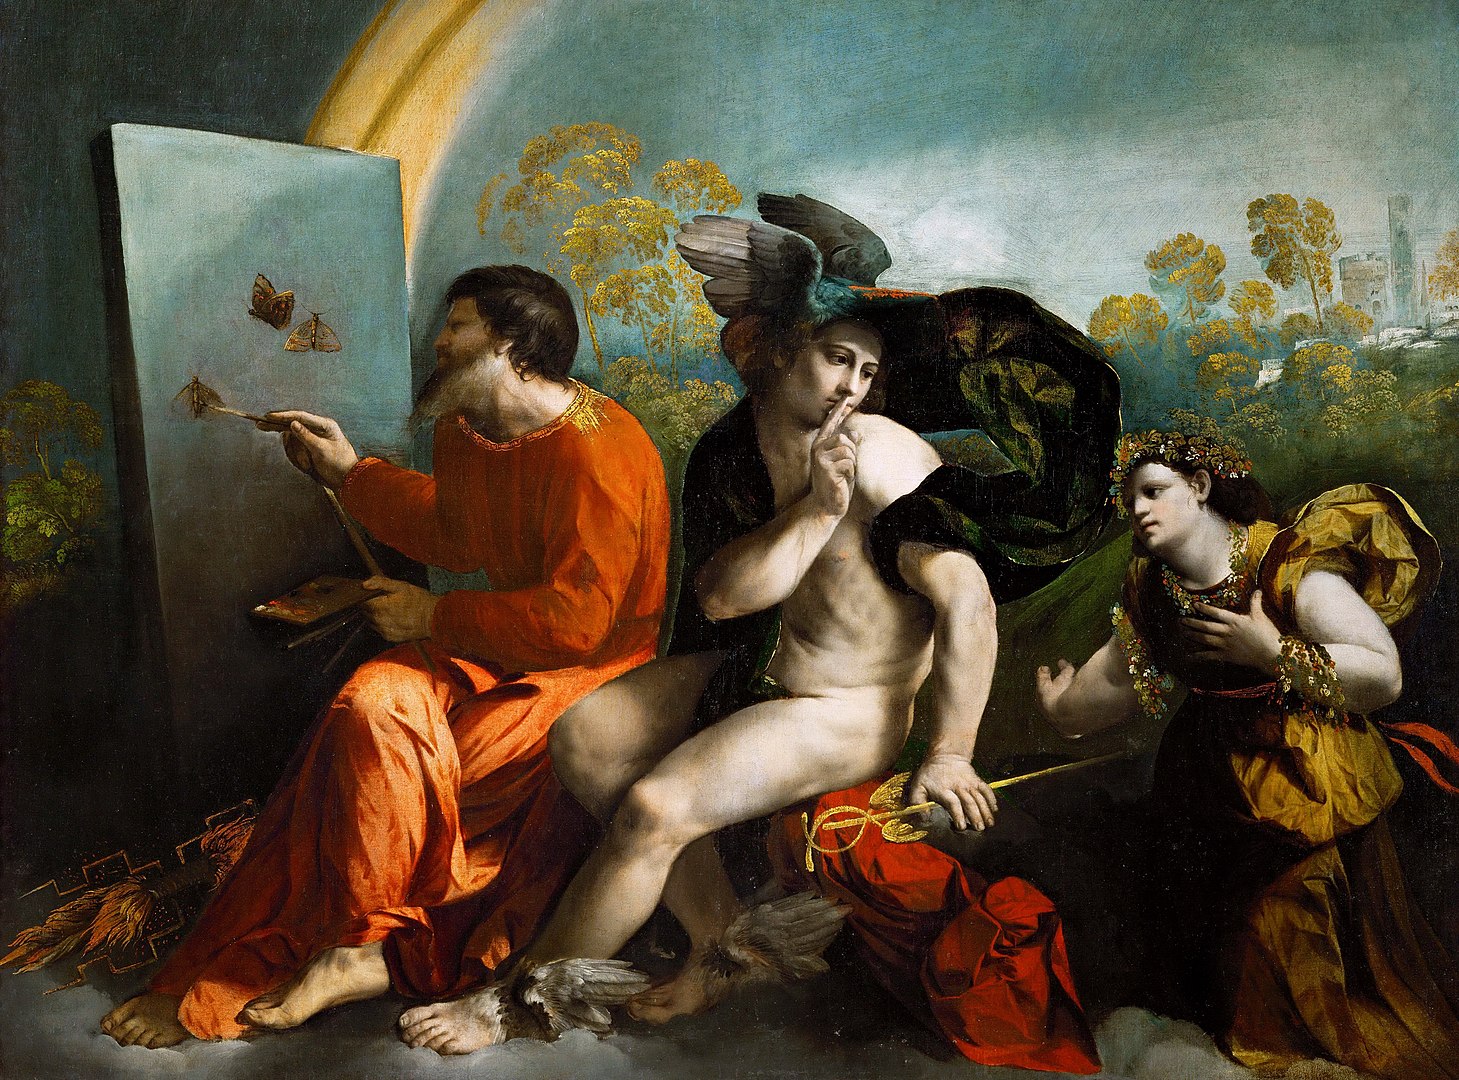 דוסו דוסי, מרקוריוס משתיק את וירטוס בזמן שזאוס מצייר